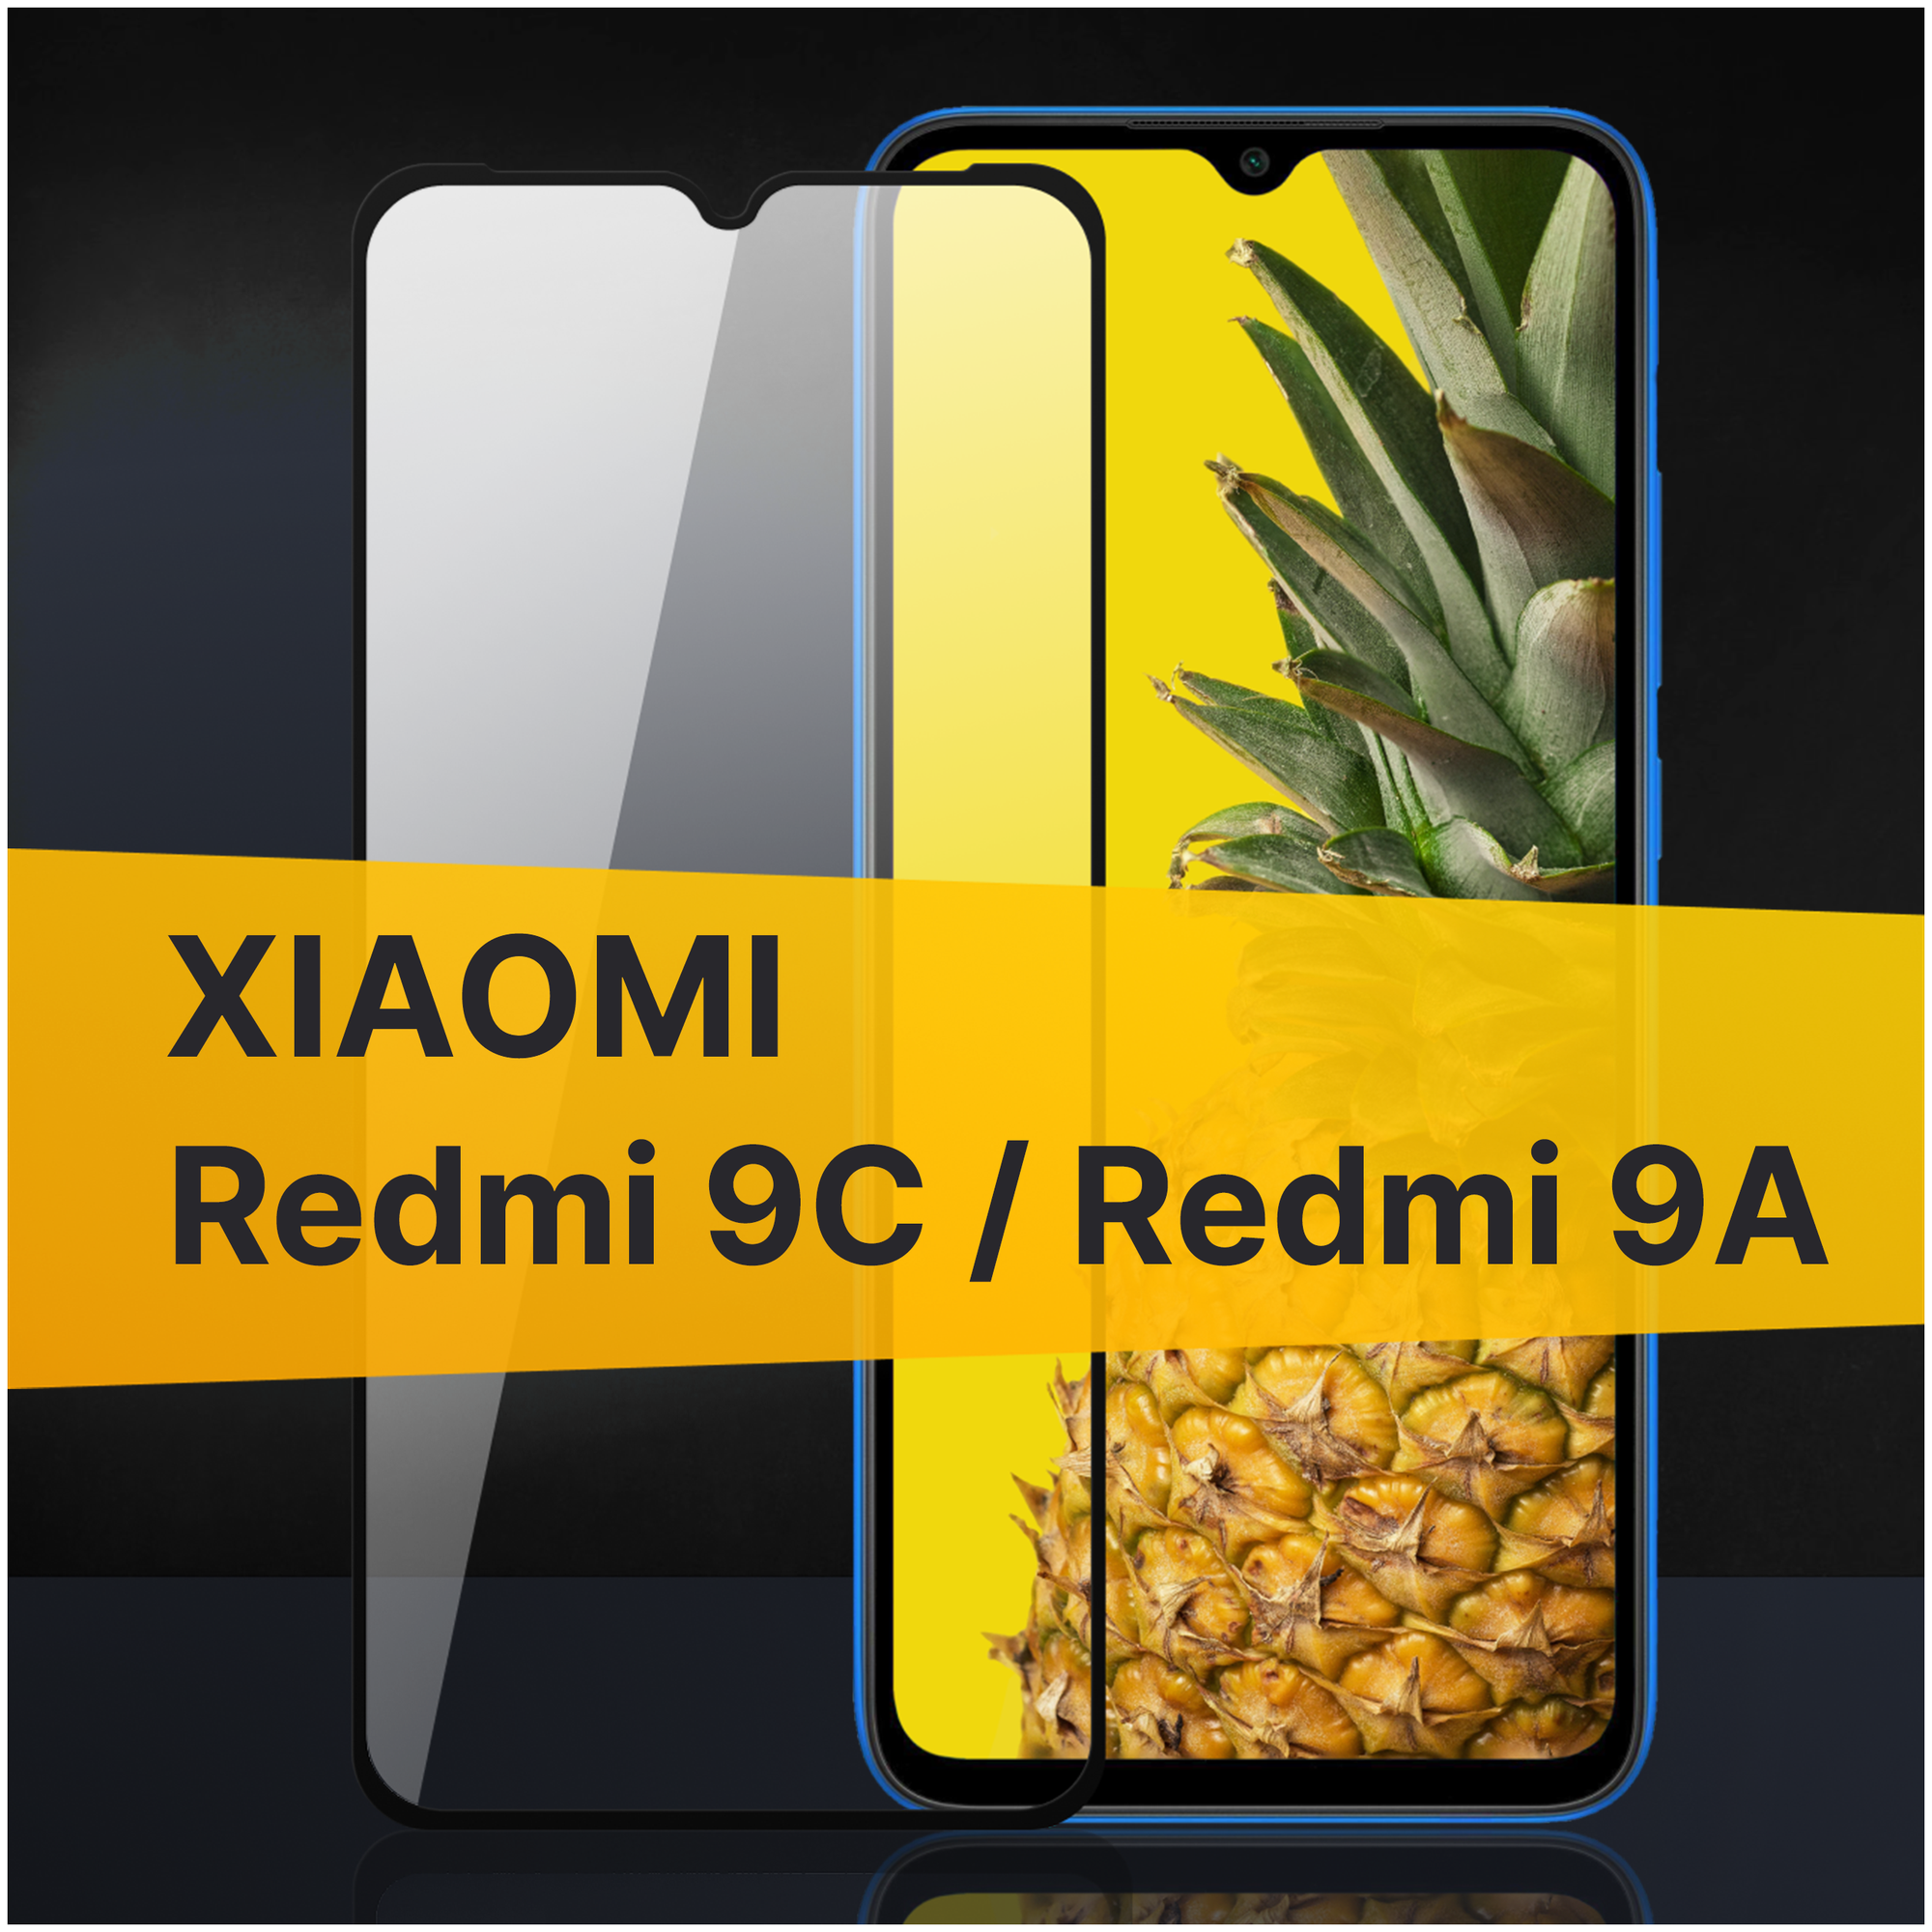 Противоударное защитное стекло для телефона Xiaomi Redmi 9C и Redmi 9A / Полноклеевое 3D стекло с олеофобным покрытием на смартфон Сяоми Редми 9С и Редми 9А / С черной рамкой